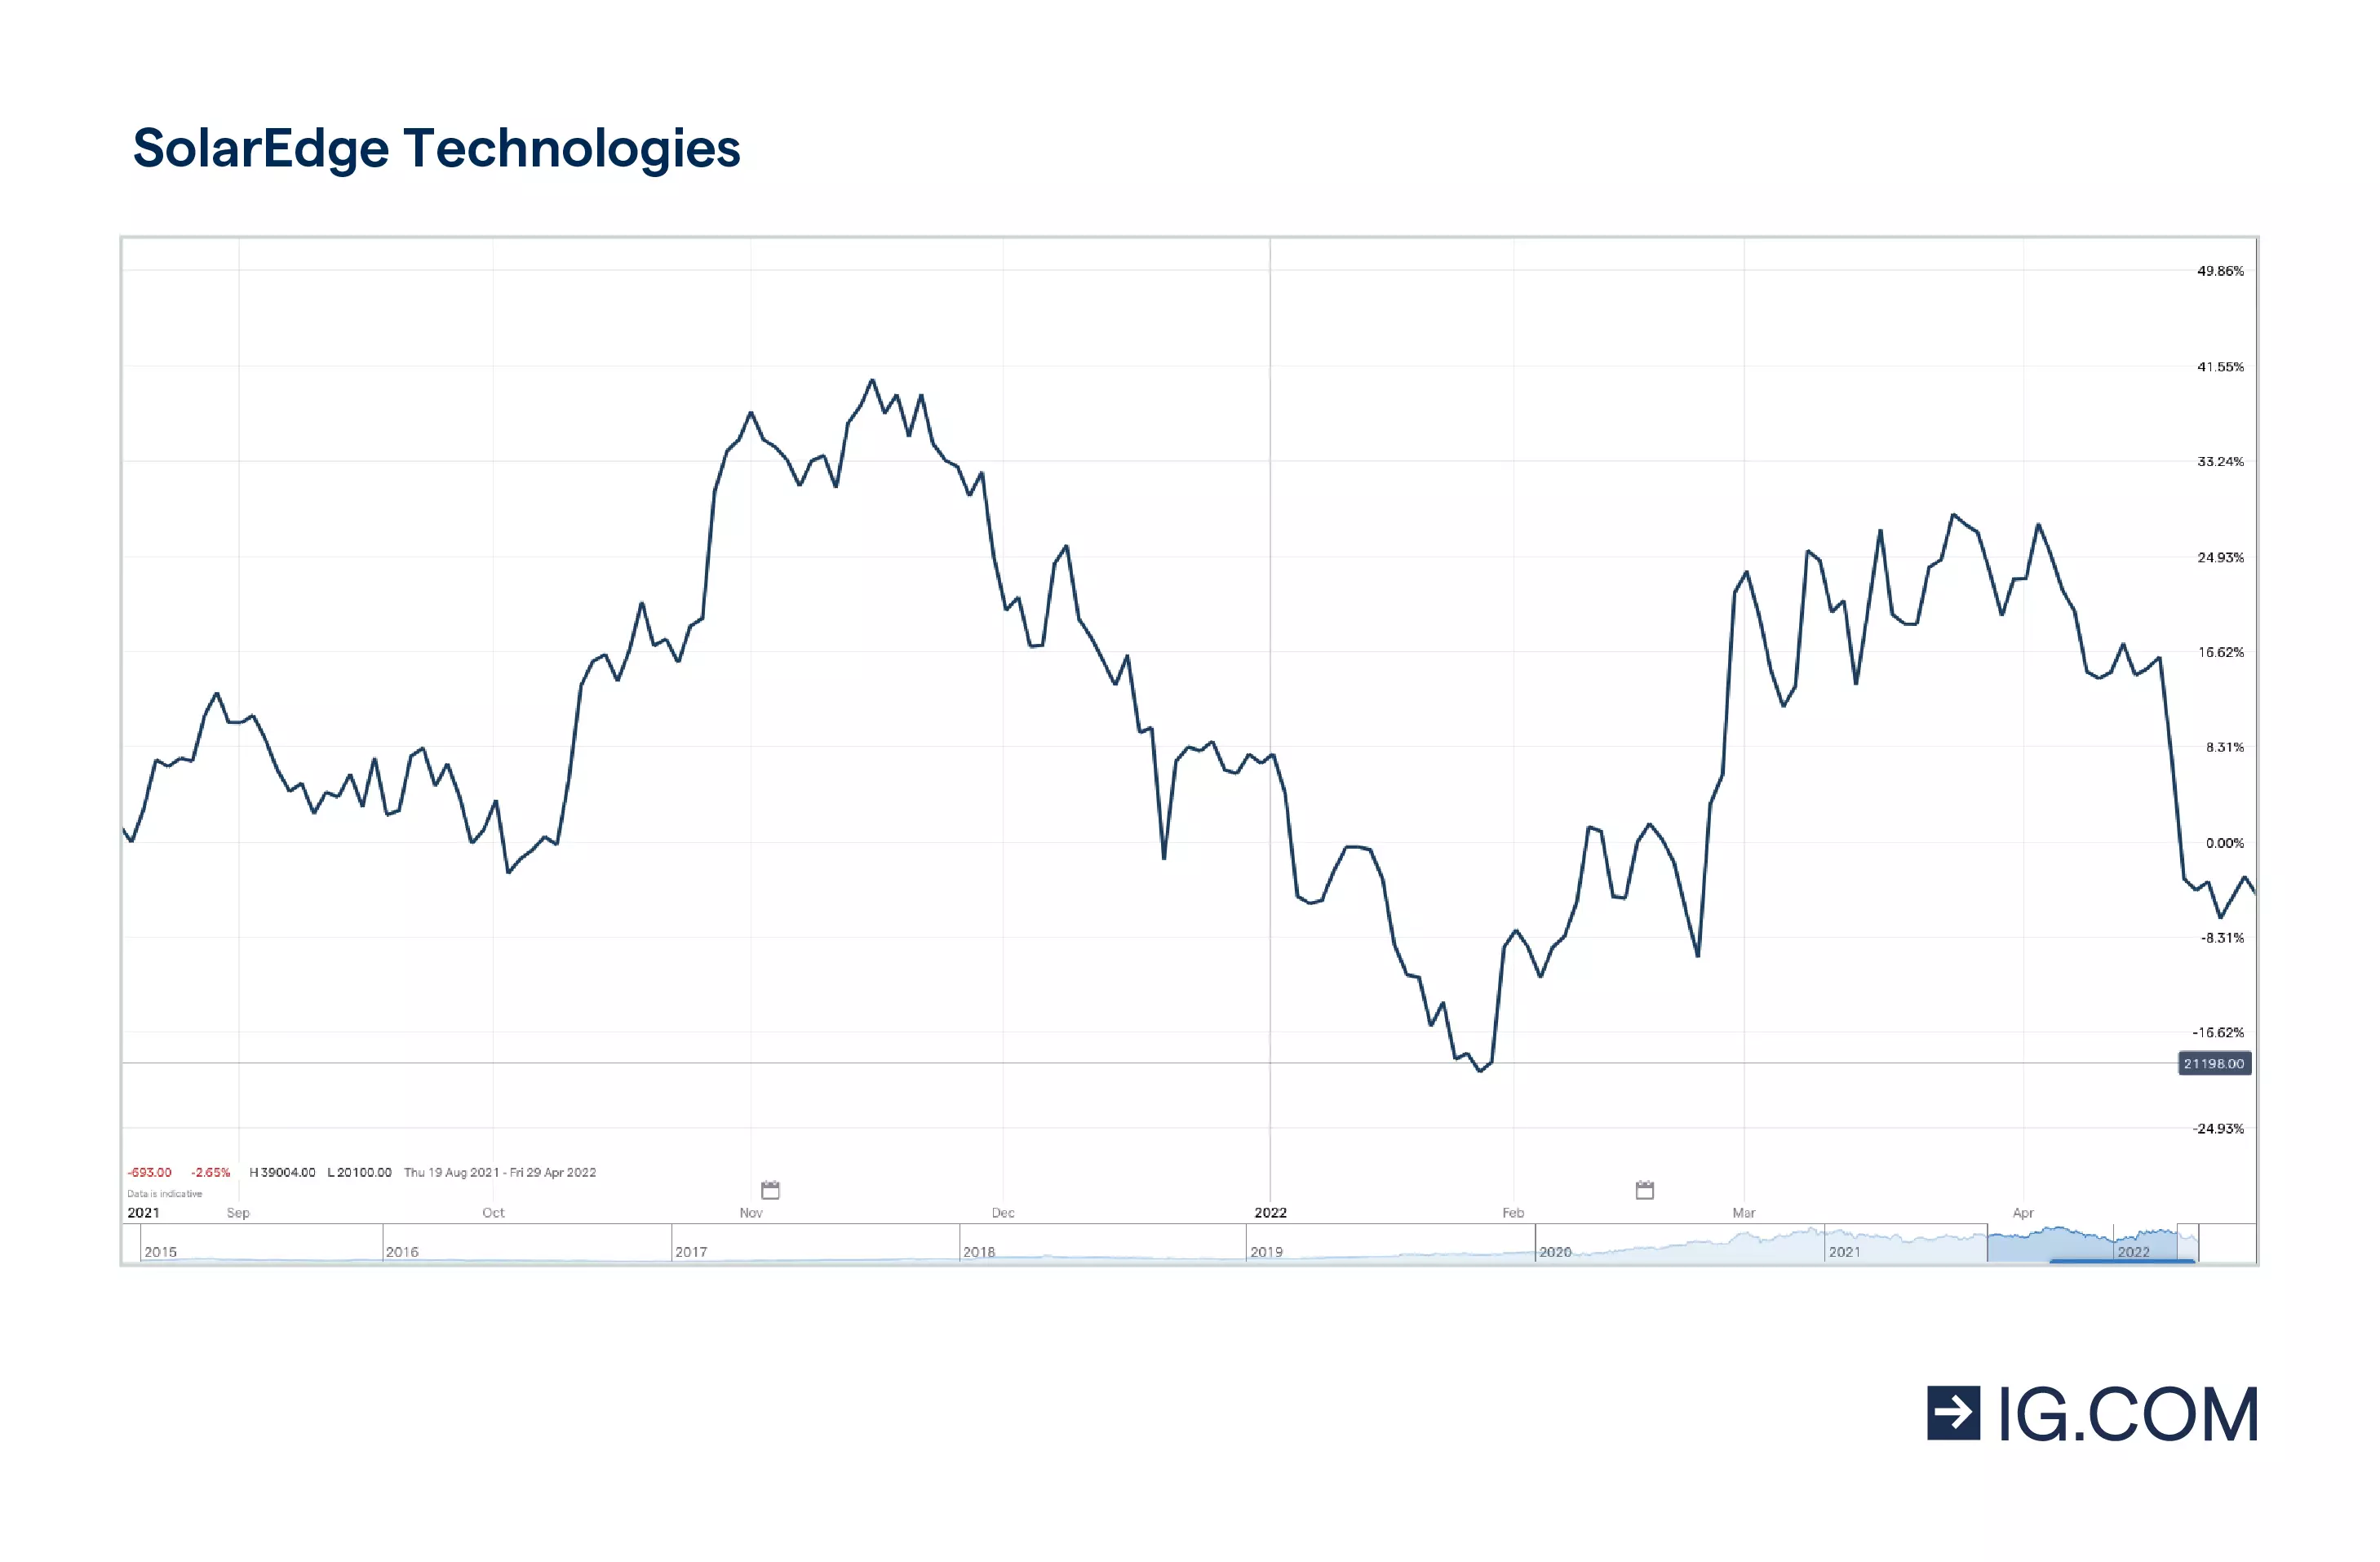 El gráfico muestra la acción de SolarEdge Technologies en un periodo de un año, tocando techo en 389,71 en noviembre de 2021 y cayendo ligeramente después, así como la cotización de la acción de 315,41 en abril de 2022.